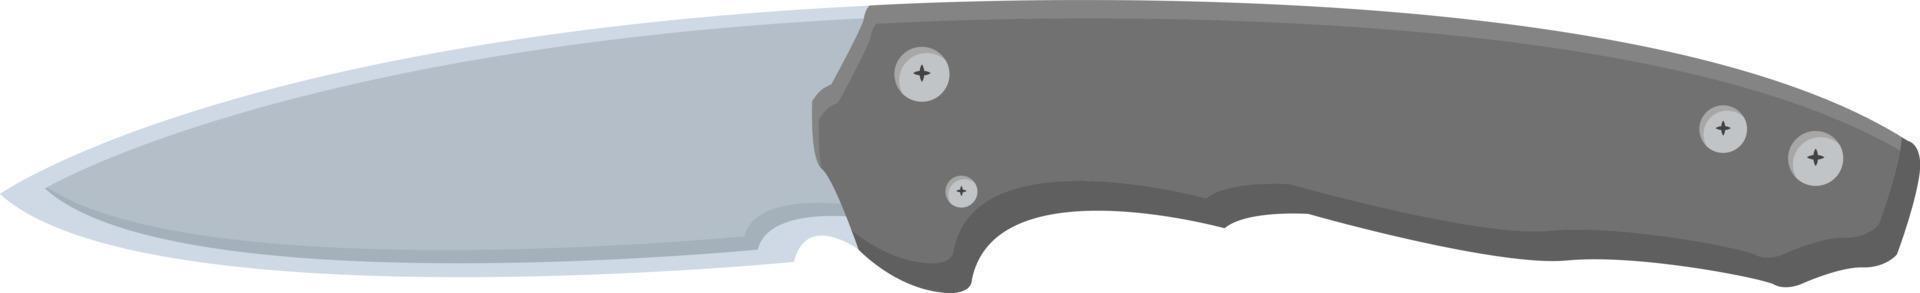 couteau de poche, illustration, vecteur sur fond blanc.